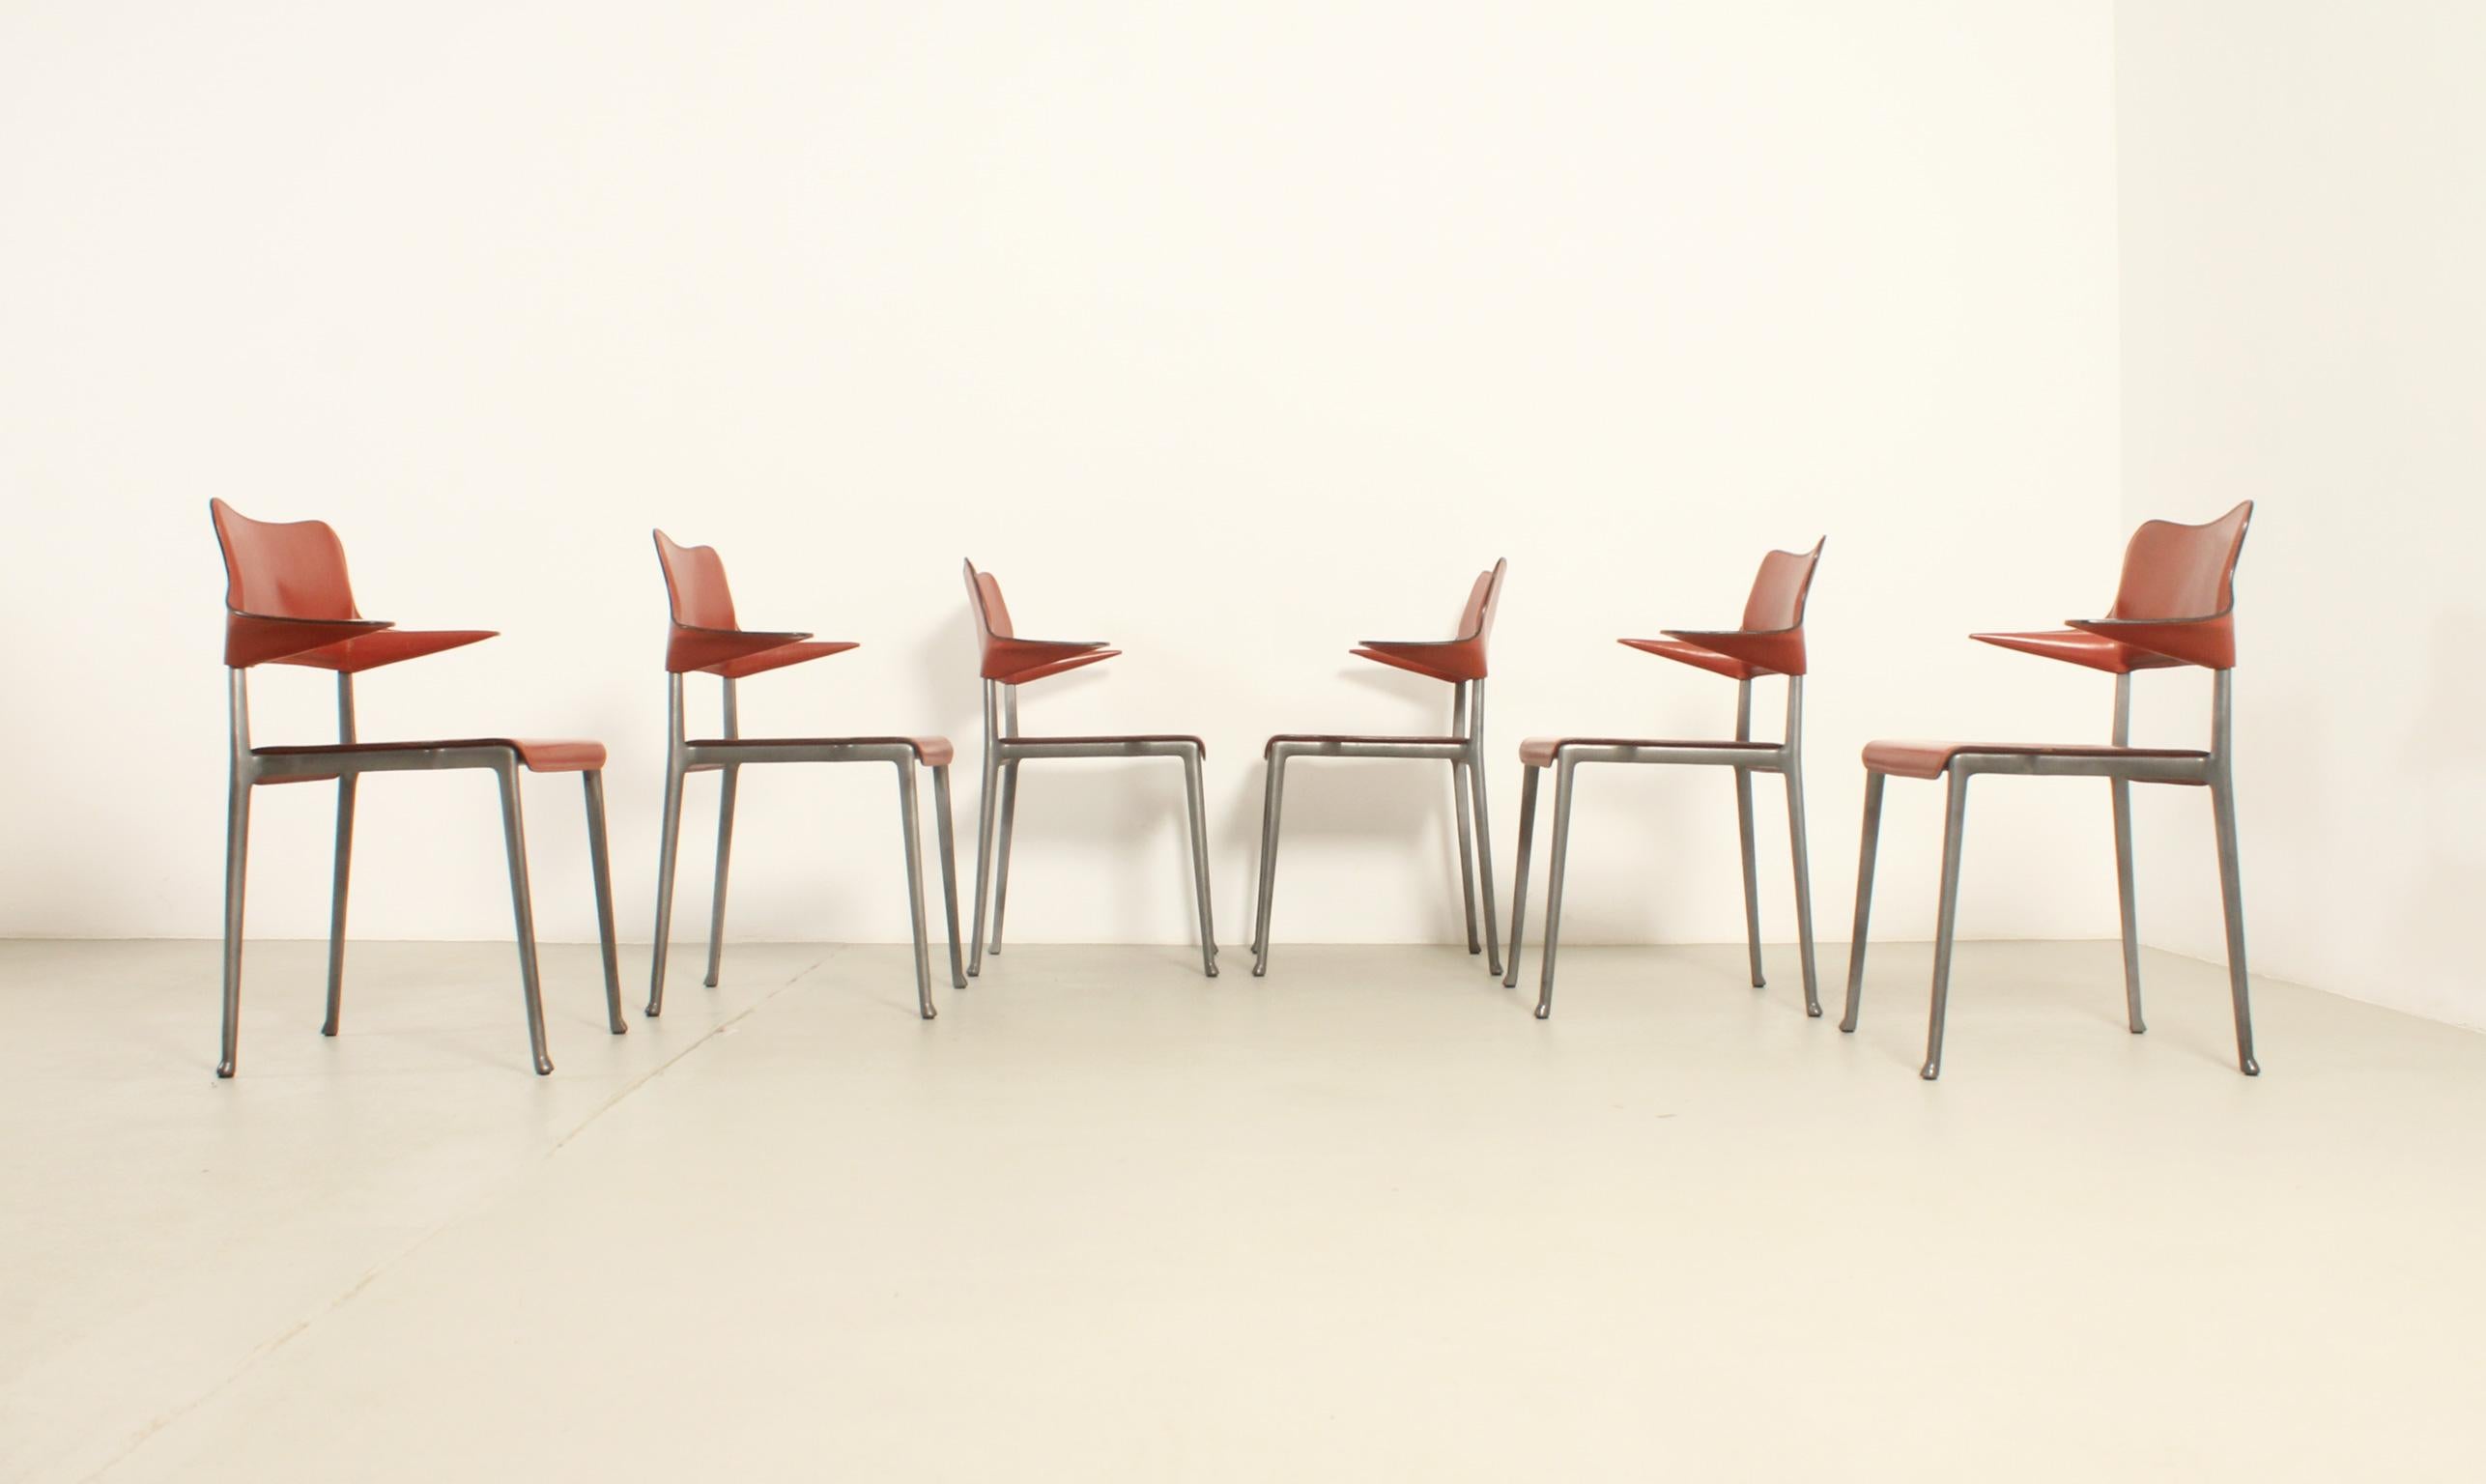 Satz von sechs Kumo-Stühlen, 1989 vom japanischen Designer Toshiyuki Kita für die spanische Firma Casas entworfen und nur für kurze Zeit produziert. Struktur aus Aluminium mit Epoxy-Finish und dickem Leder. 